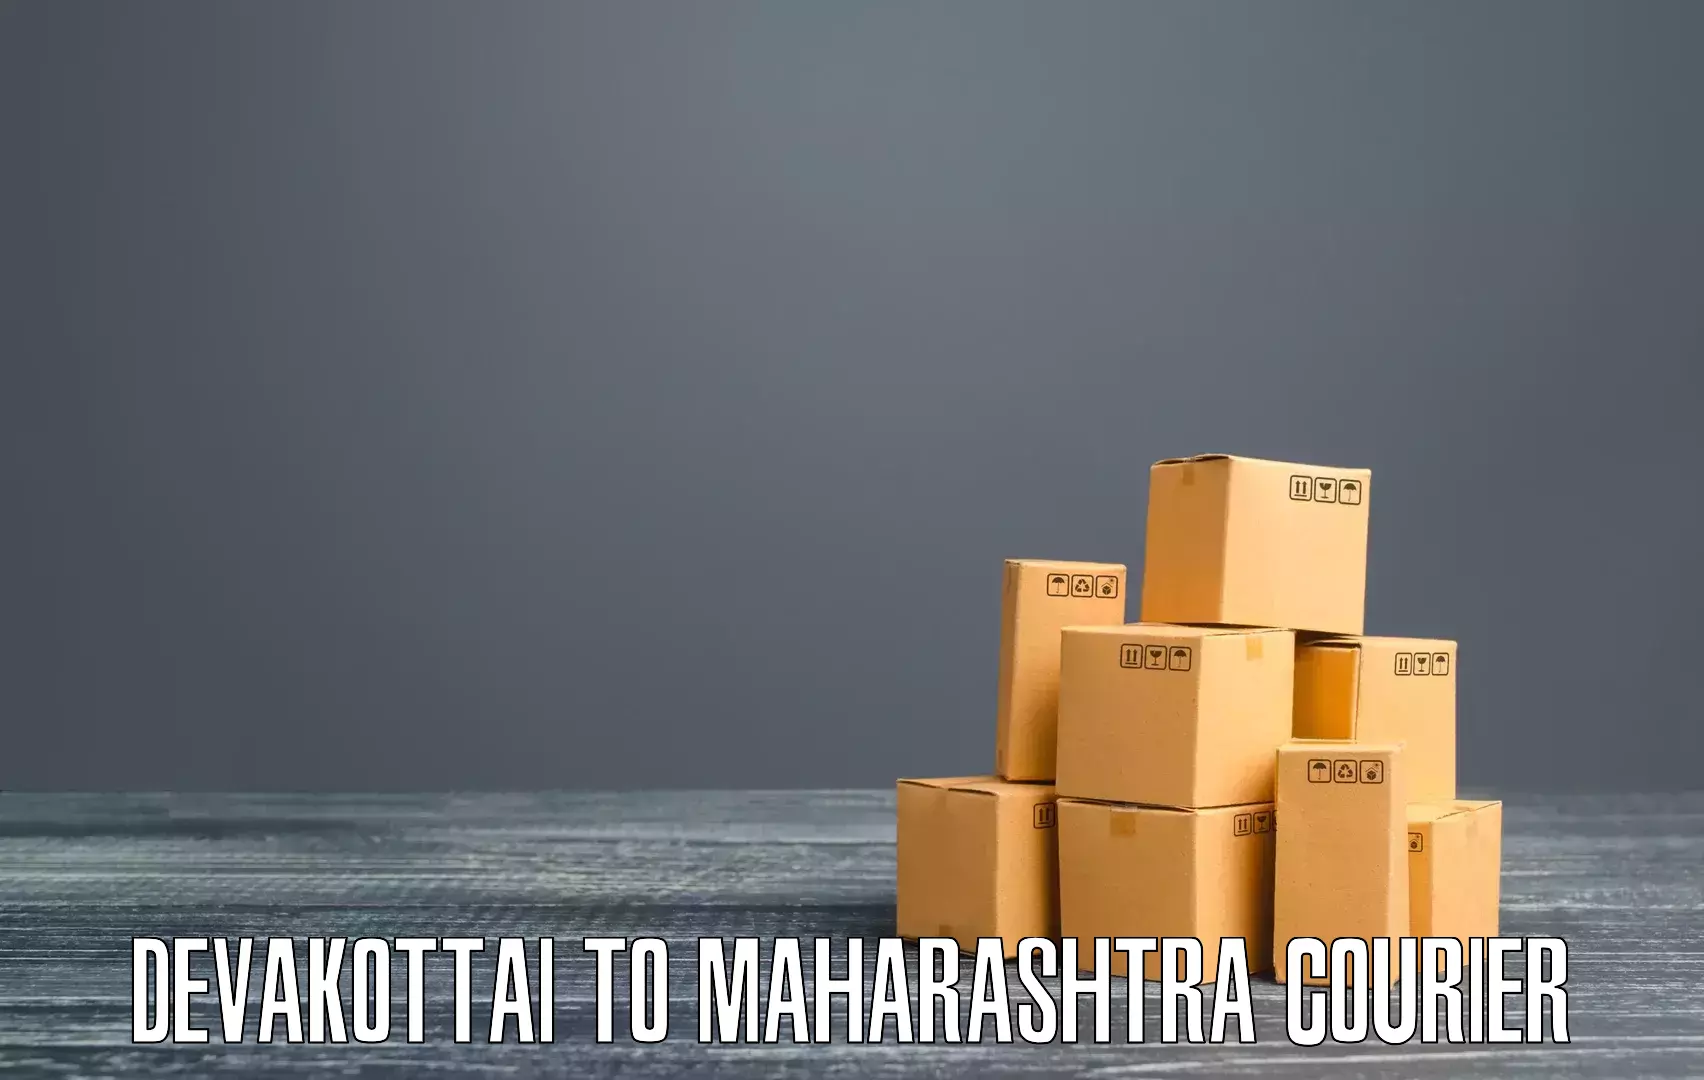 High-speed logistics services Devakottai to Muktainagar